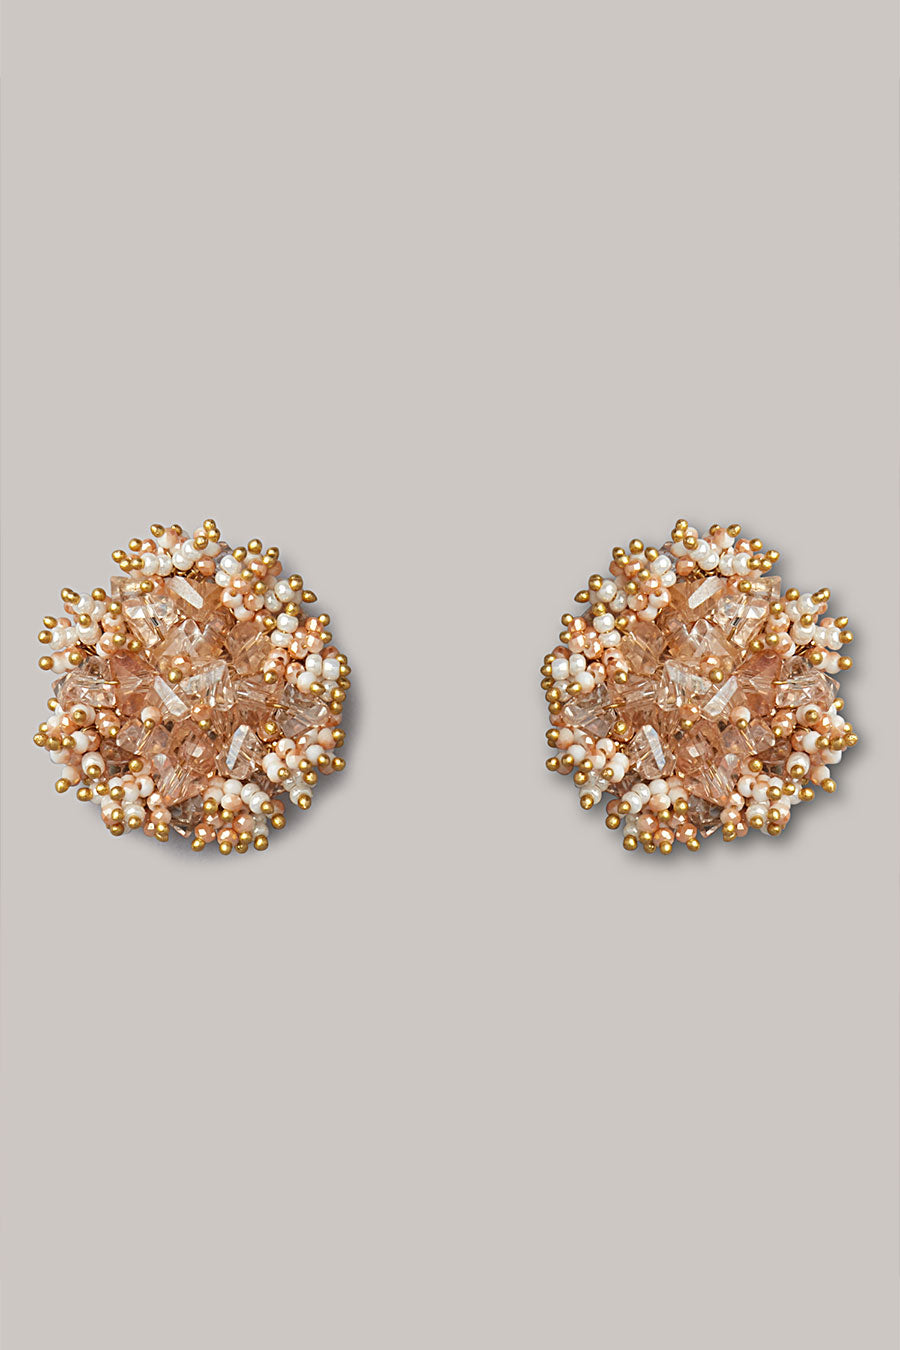 Peach Semi-Precious Stone Stud Earrings